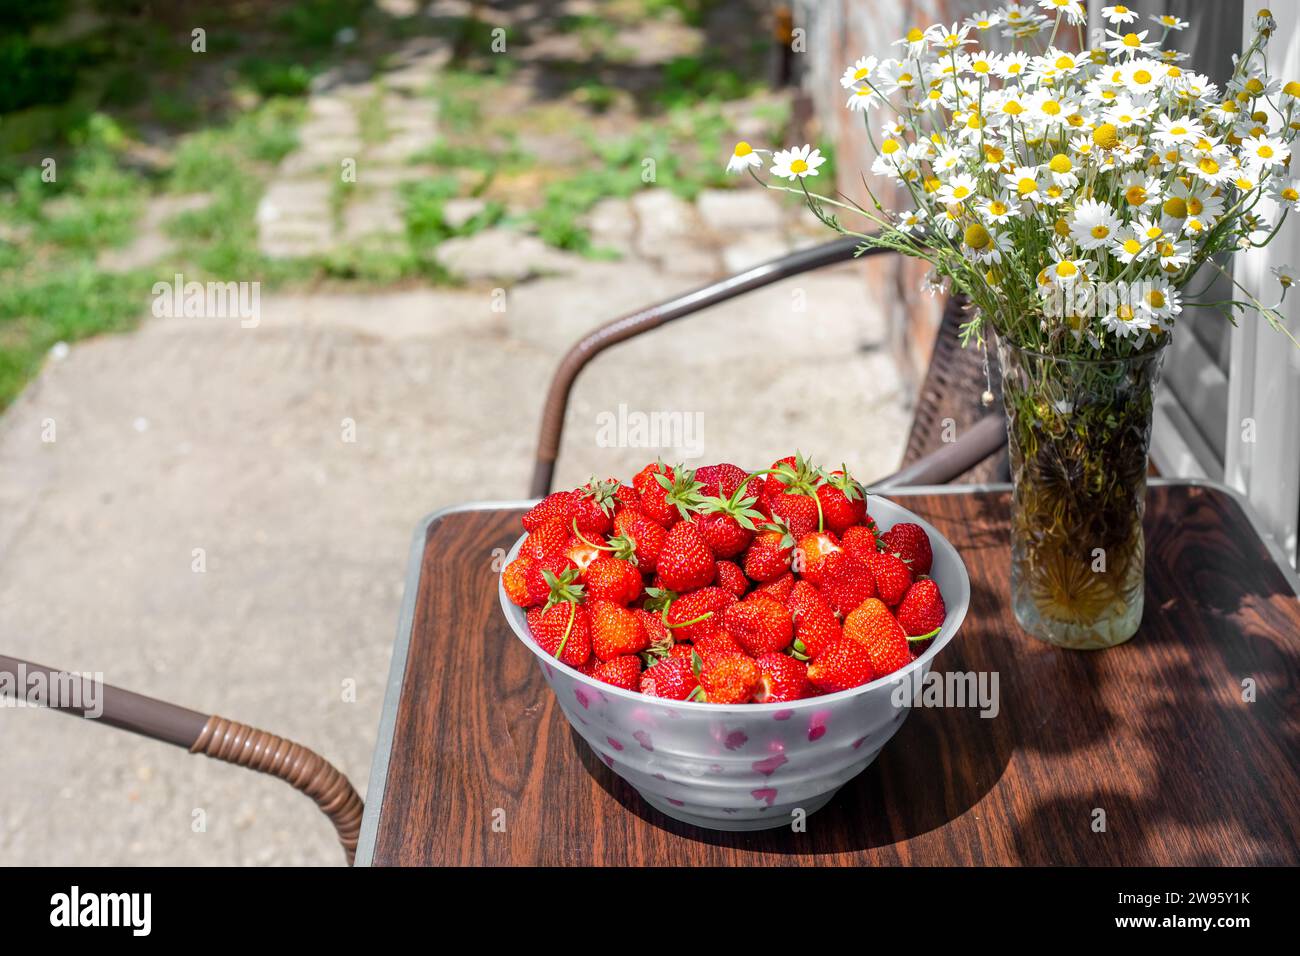 tazza con fragole rosse mature sul tavolo e un vaso con margherite sulla terrazza della casa. Foto Stock